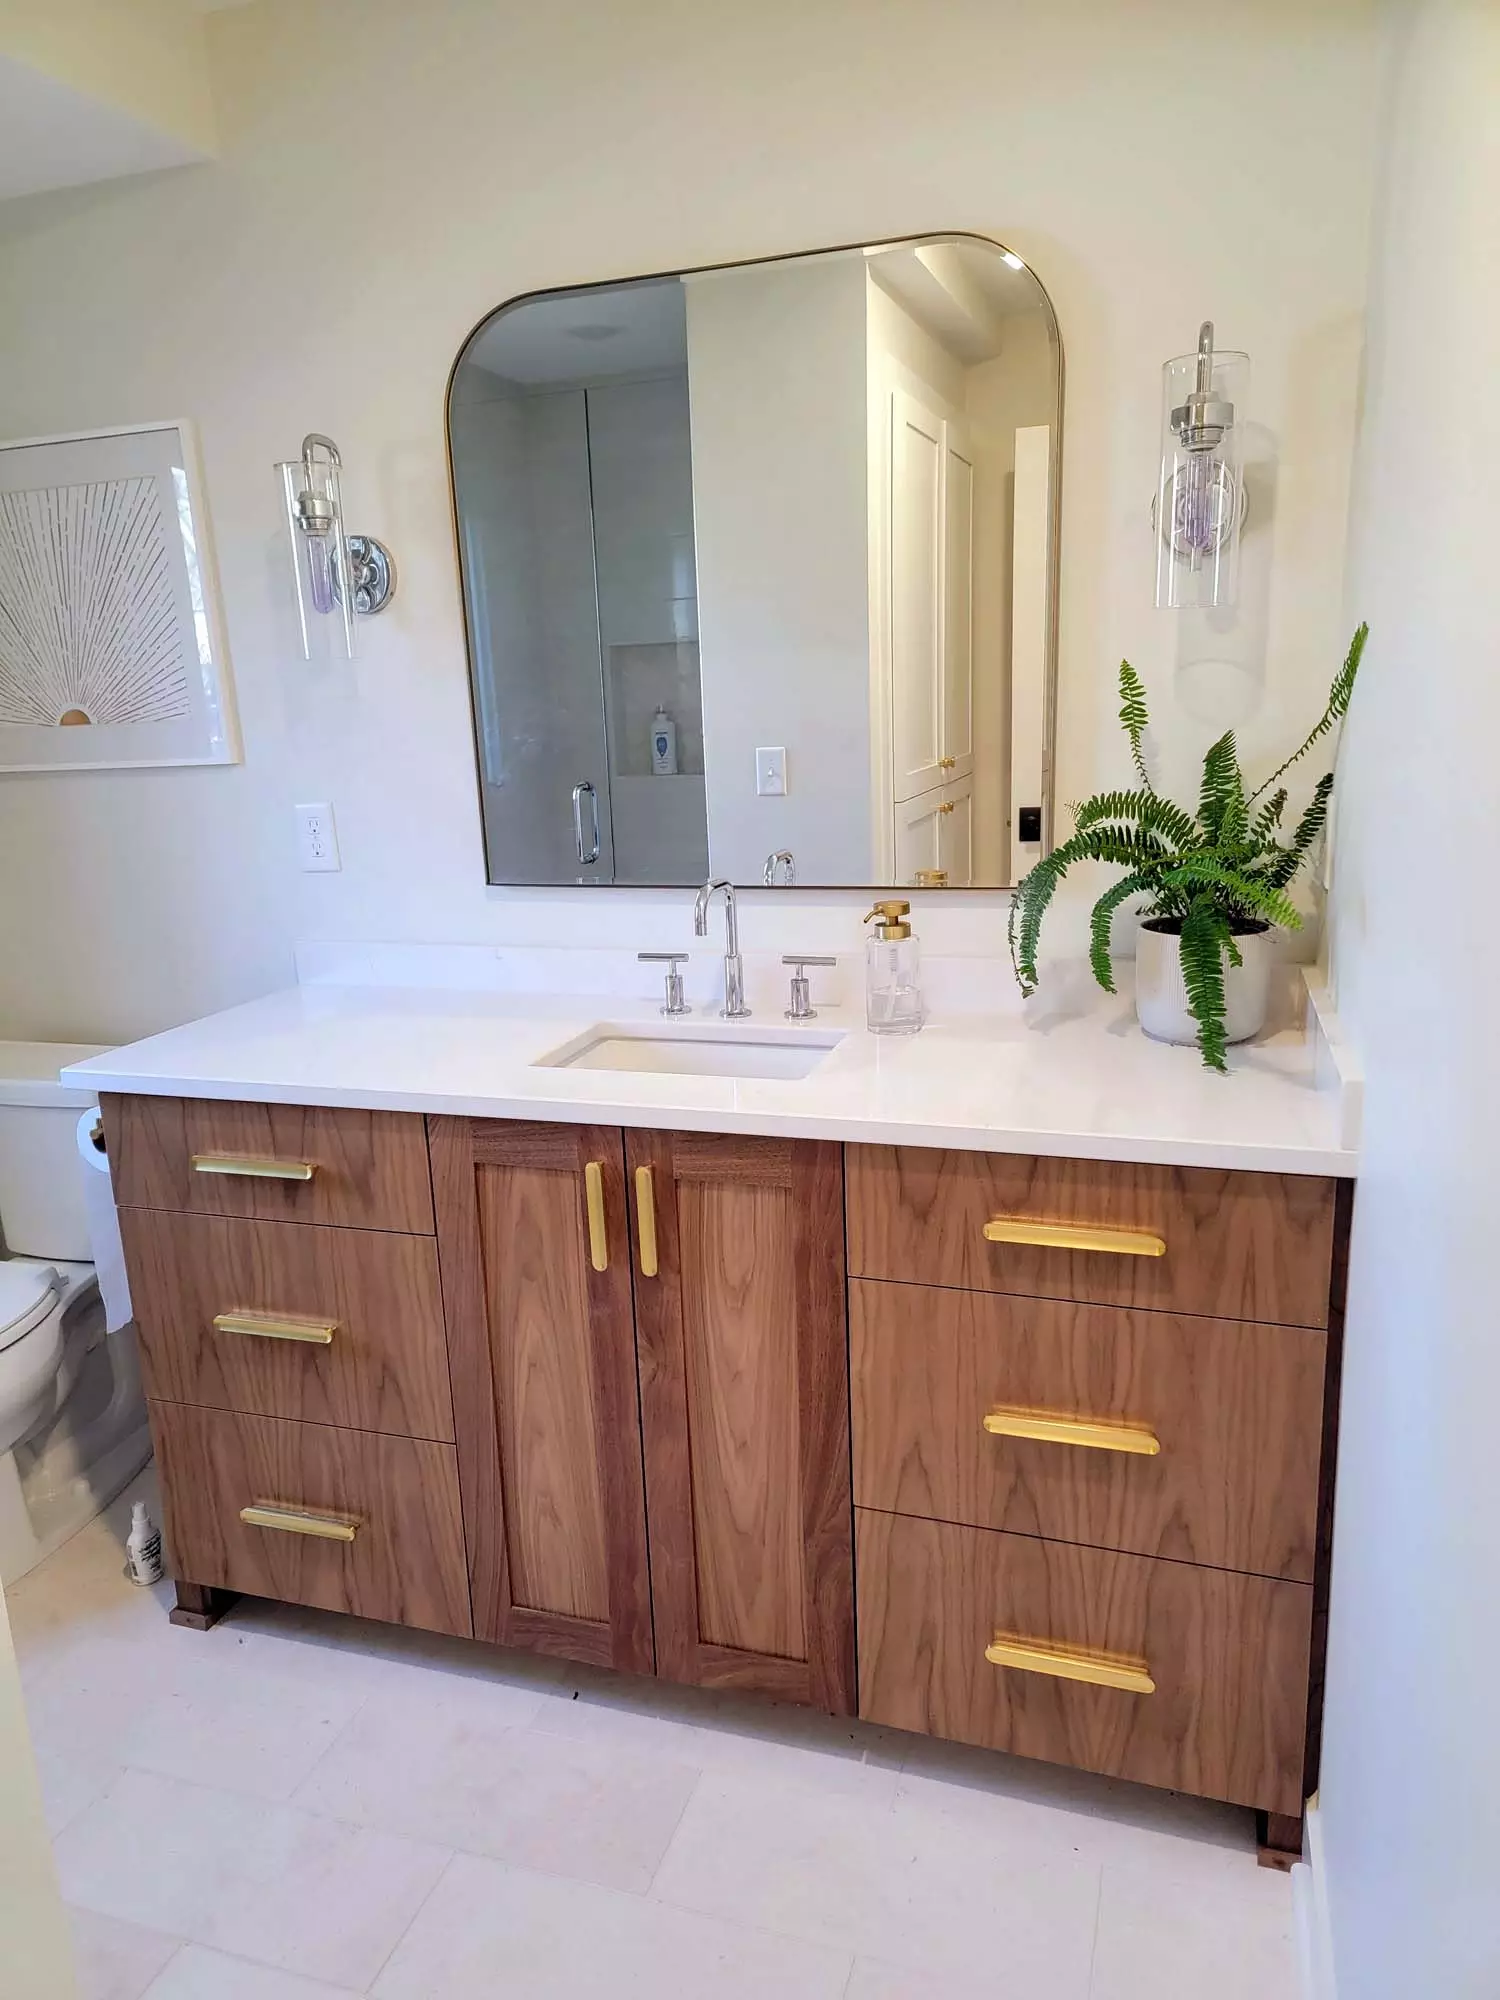 ¾ bath w/ Tile shower, Heavy glass door & panel, Walnut Custom Vanity